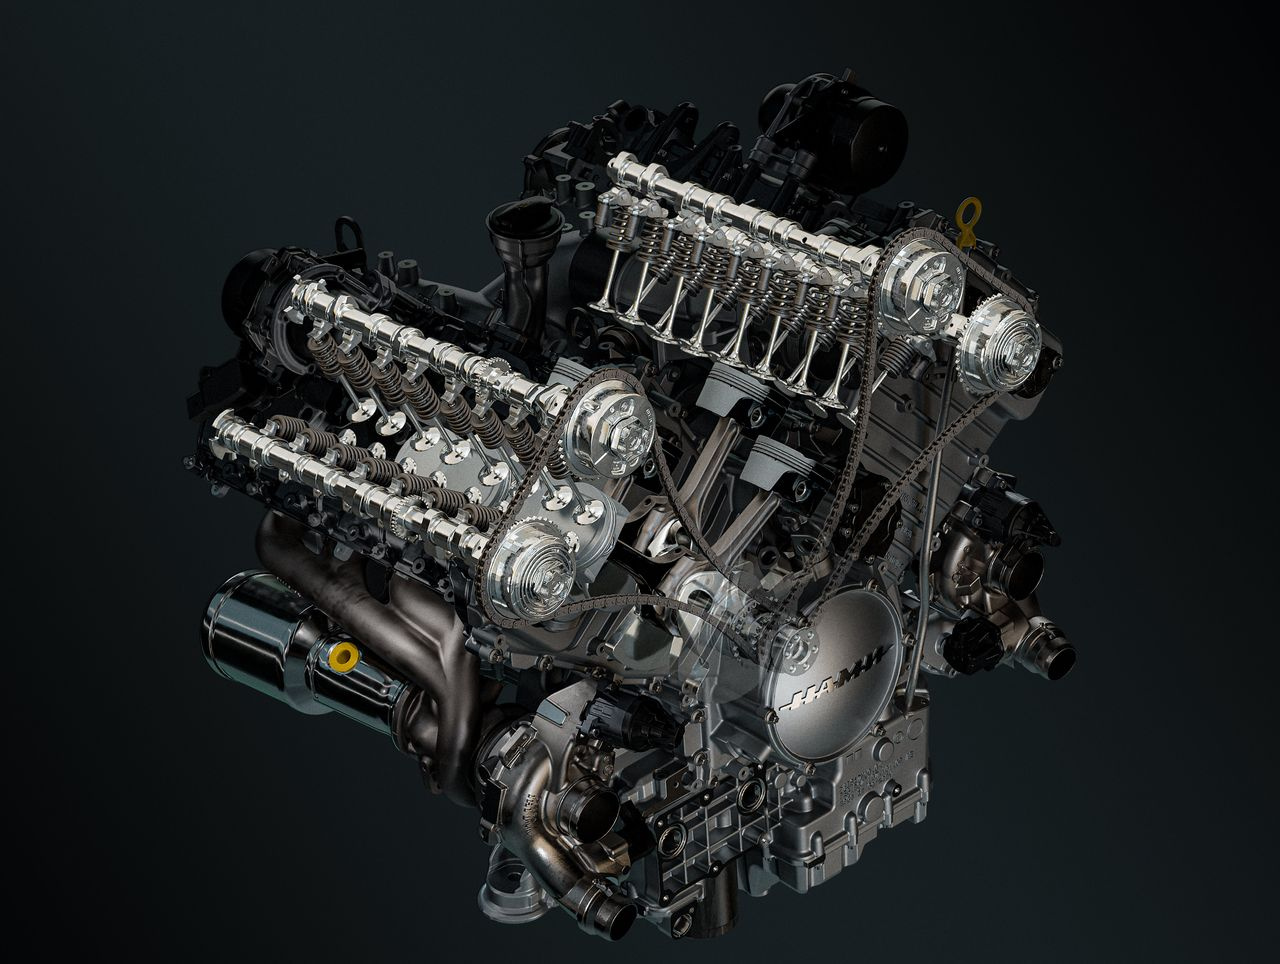 Двигатель V8 с двойным турбонаддувом разработан Porsche Engineering, но несет бренд НАМИ